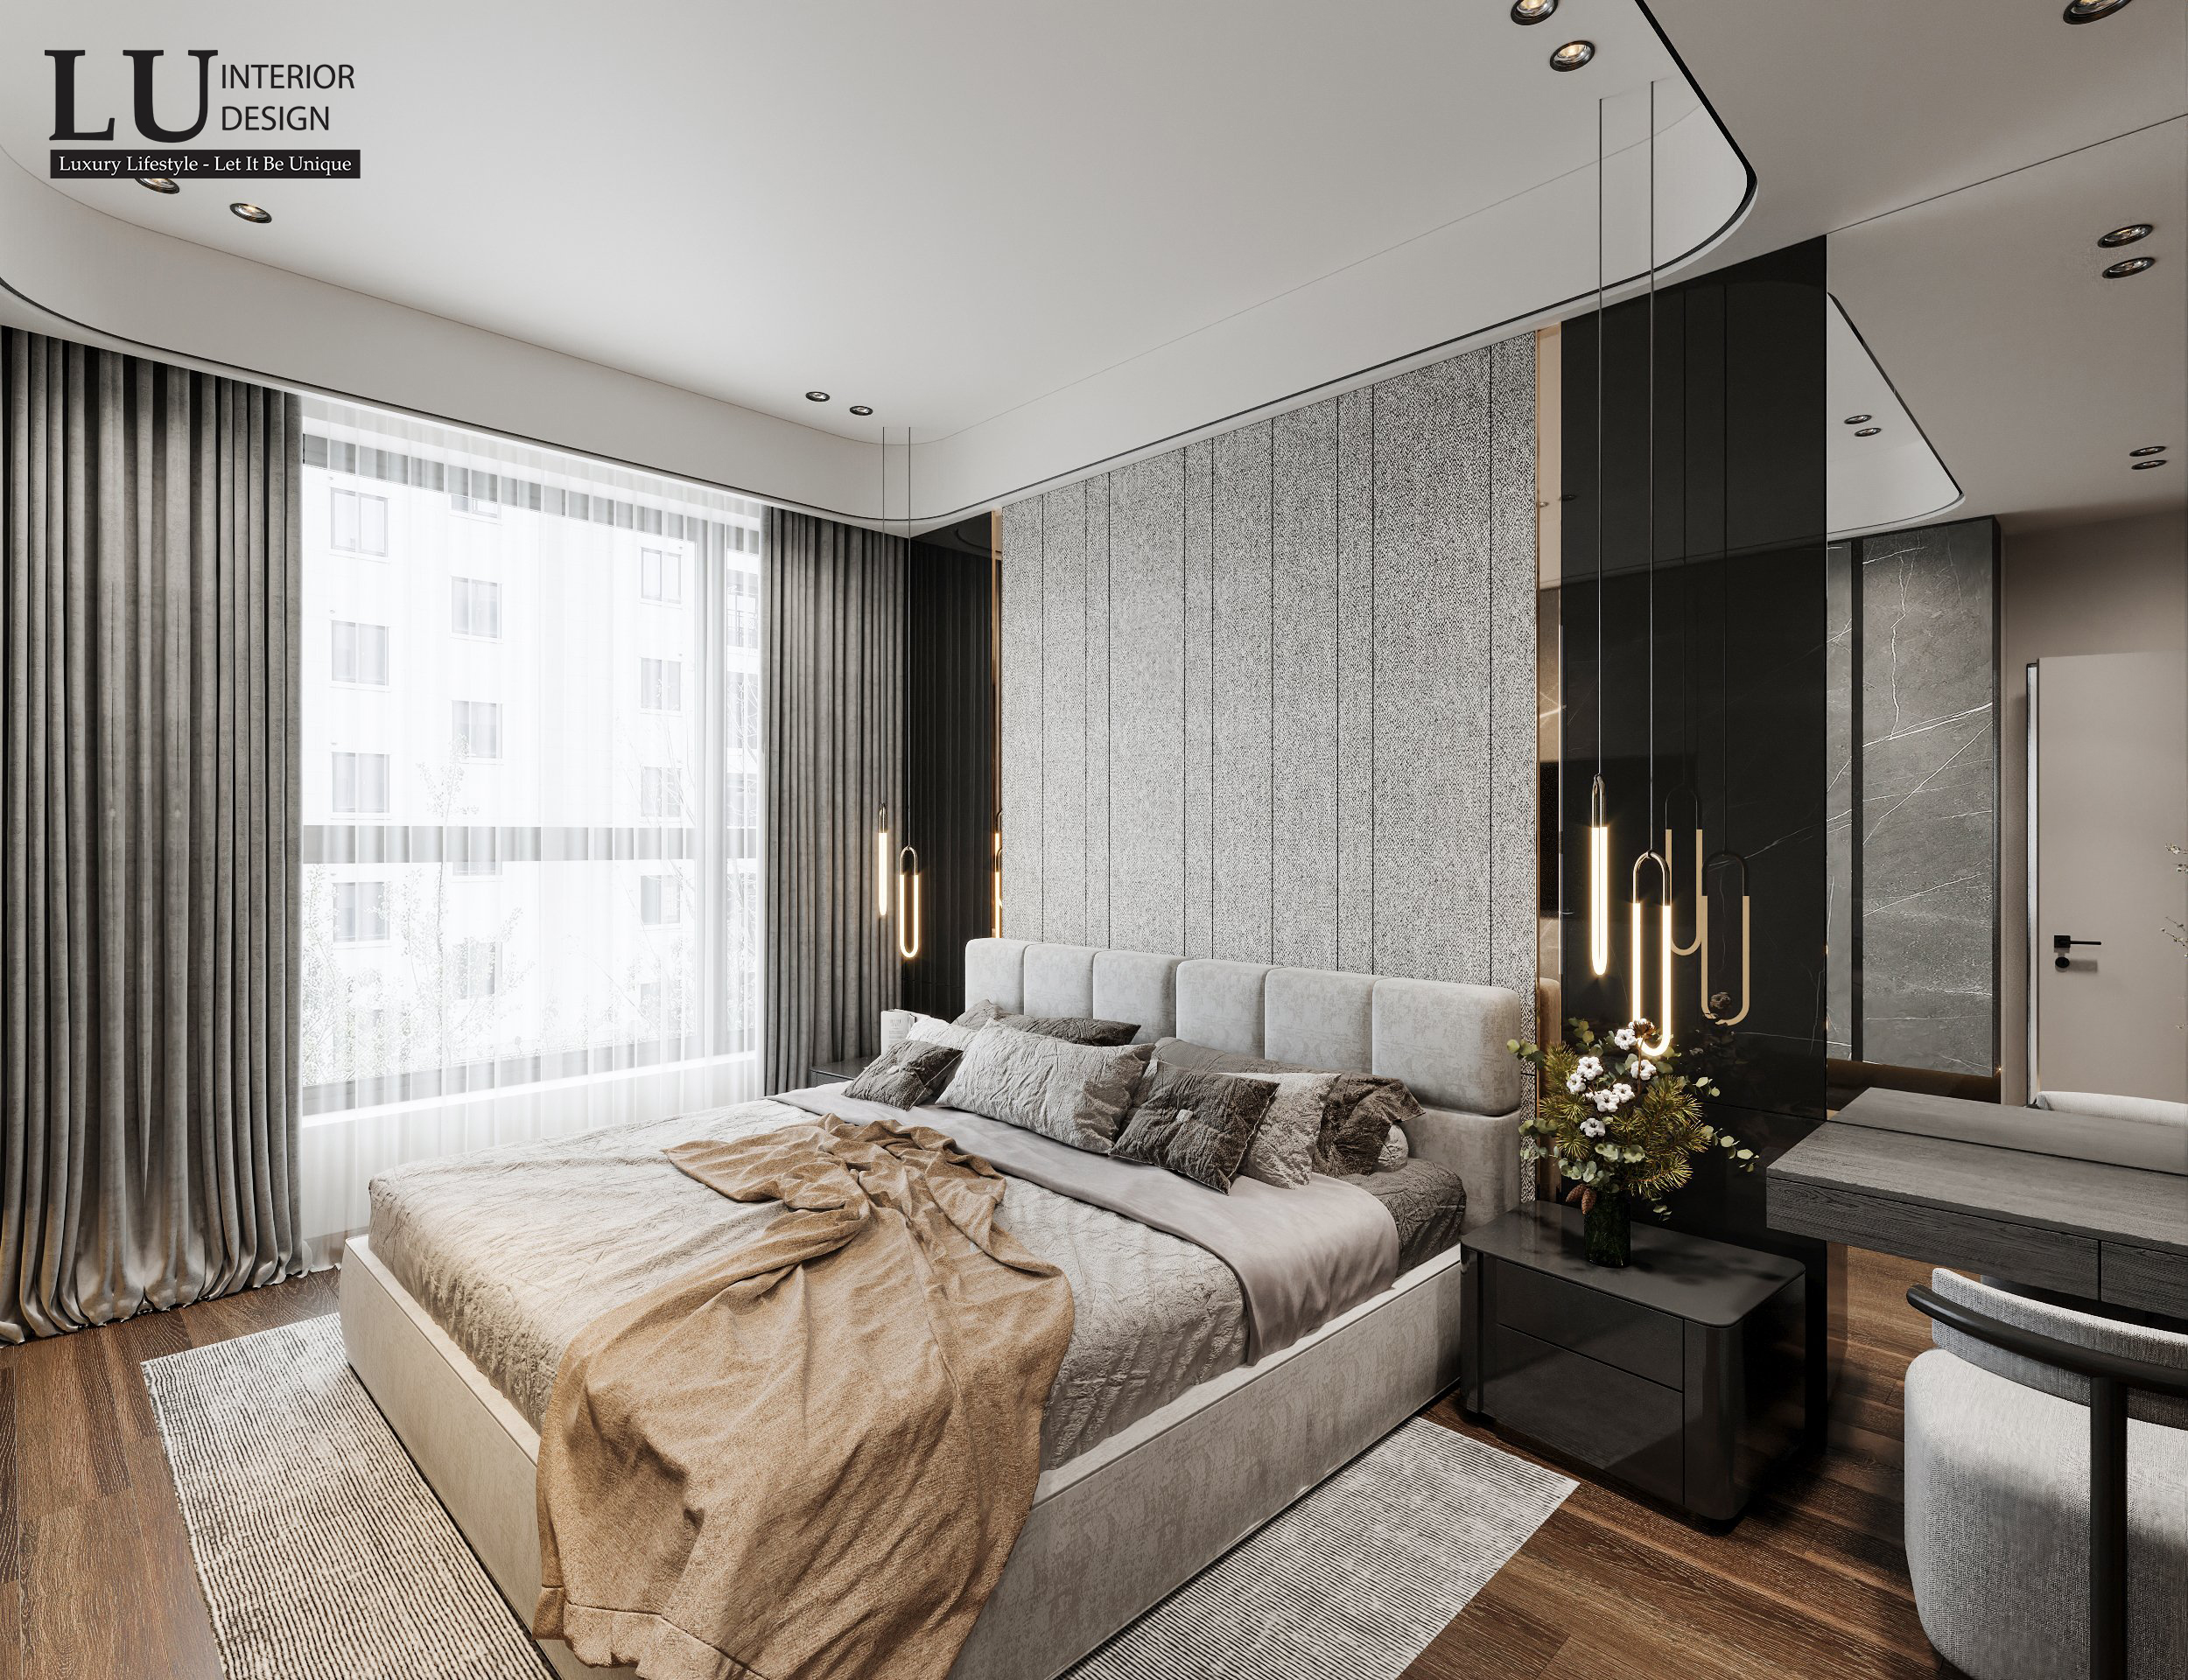 Phòng ngủ với tone màu tường và đồ nội thất trung tính nhưng vẫn toát lên vẻ đẹp sang trọng bởi sự nhấn nhá của sàn gỗ và ánh sáng | Căn hộ The Marq - LU Design.